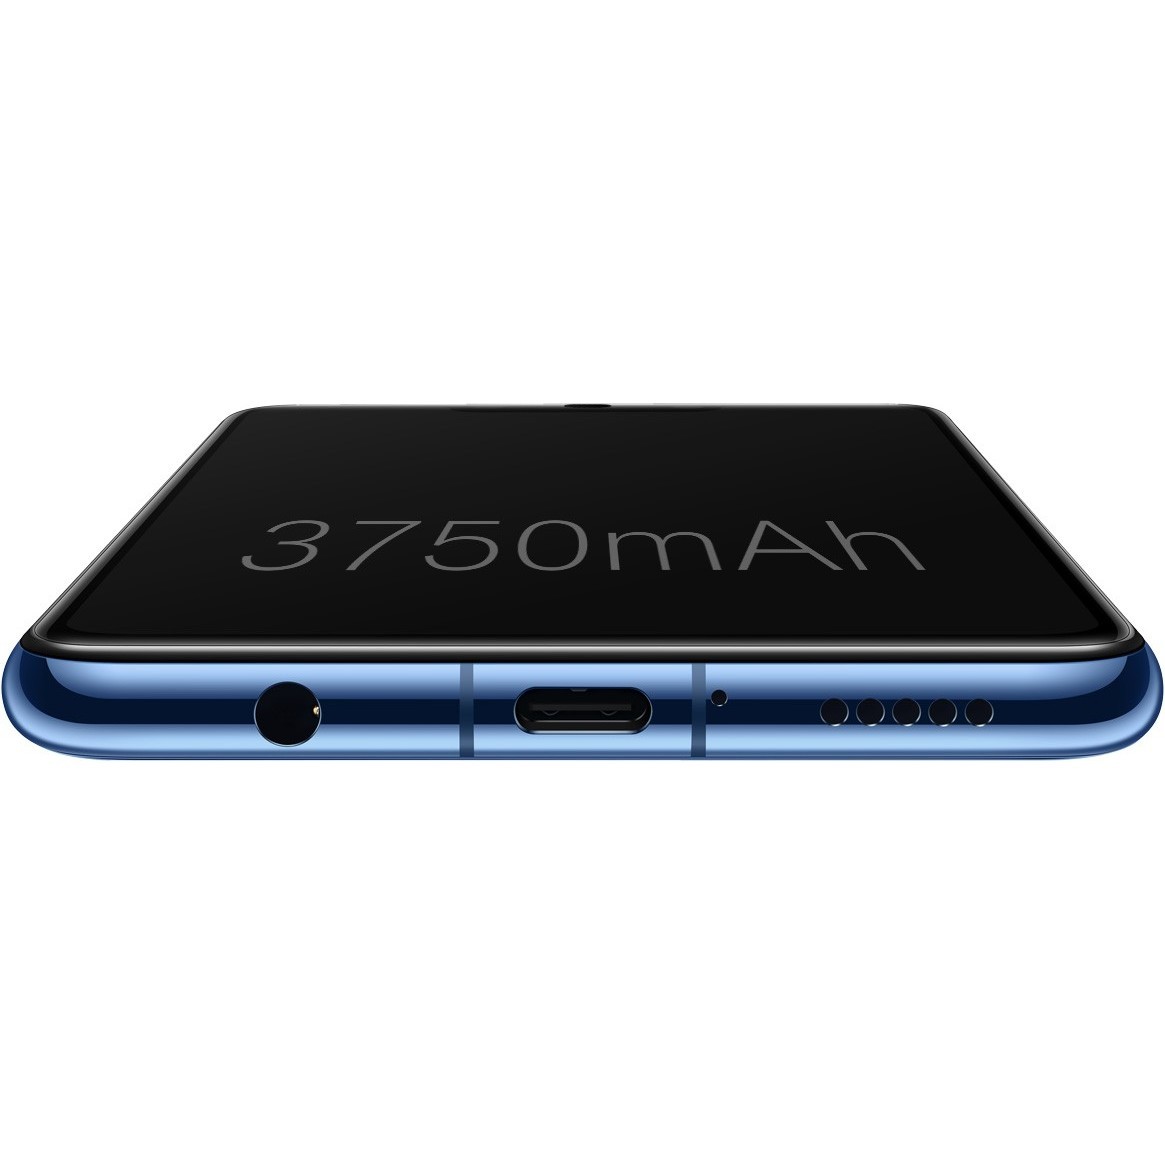 Мобильный телефон Huawei Mate 20 Lite (синий)